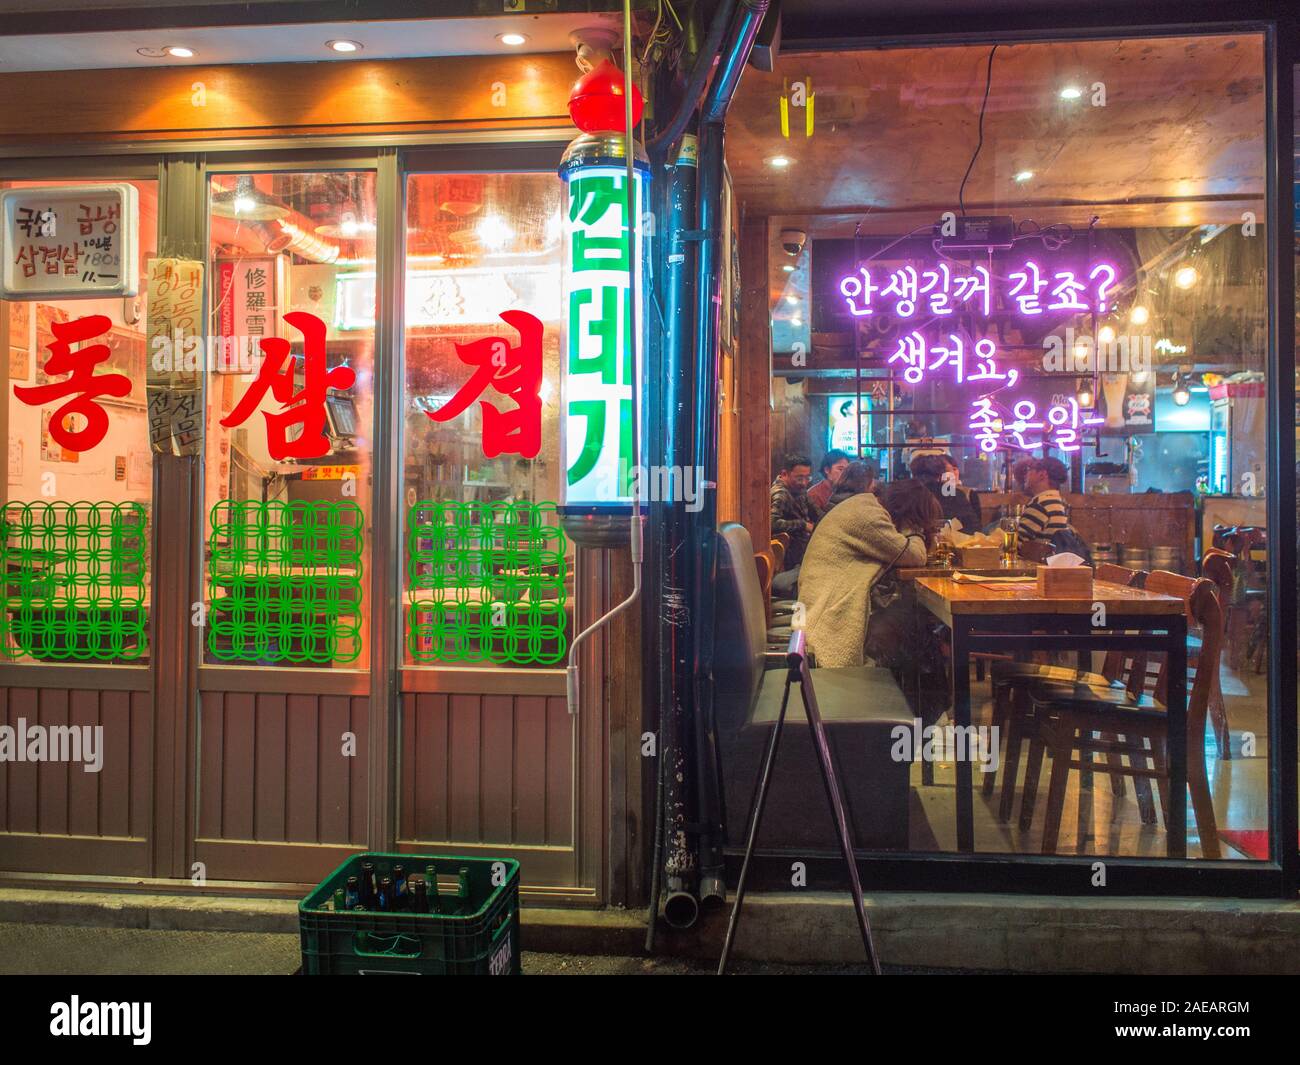 Enseignes au néon, lettres hangul, restaurant et bar de nuit, près de la rue station Gyeongbokgung, Séoul, Corée du Sud. Banque D'Images